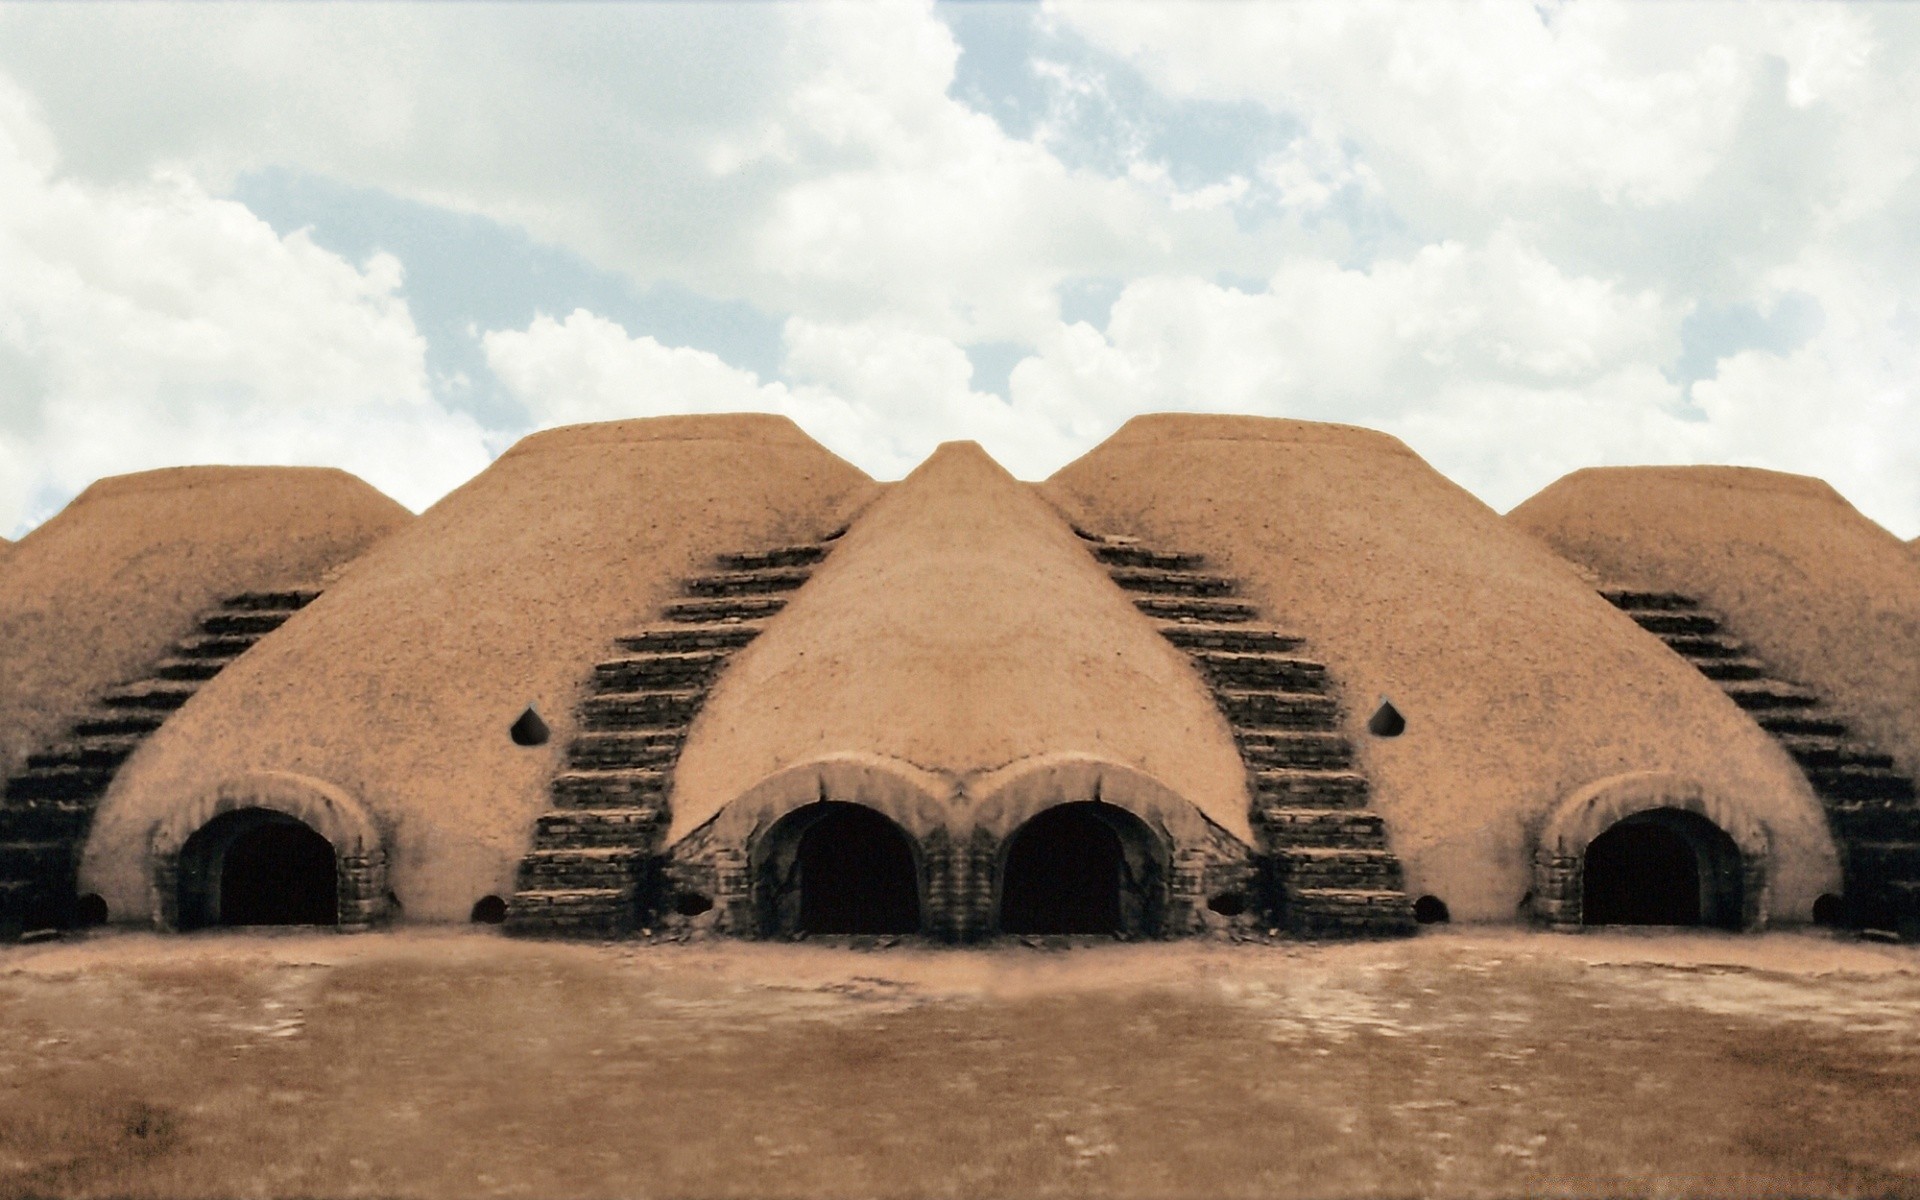 азия путешествия пустыня архитектура на открытом воздухе дом небо пейзаж песок дома туризм дневной свет